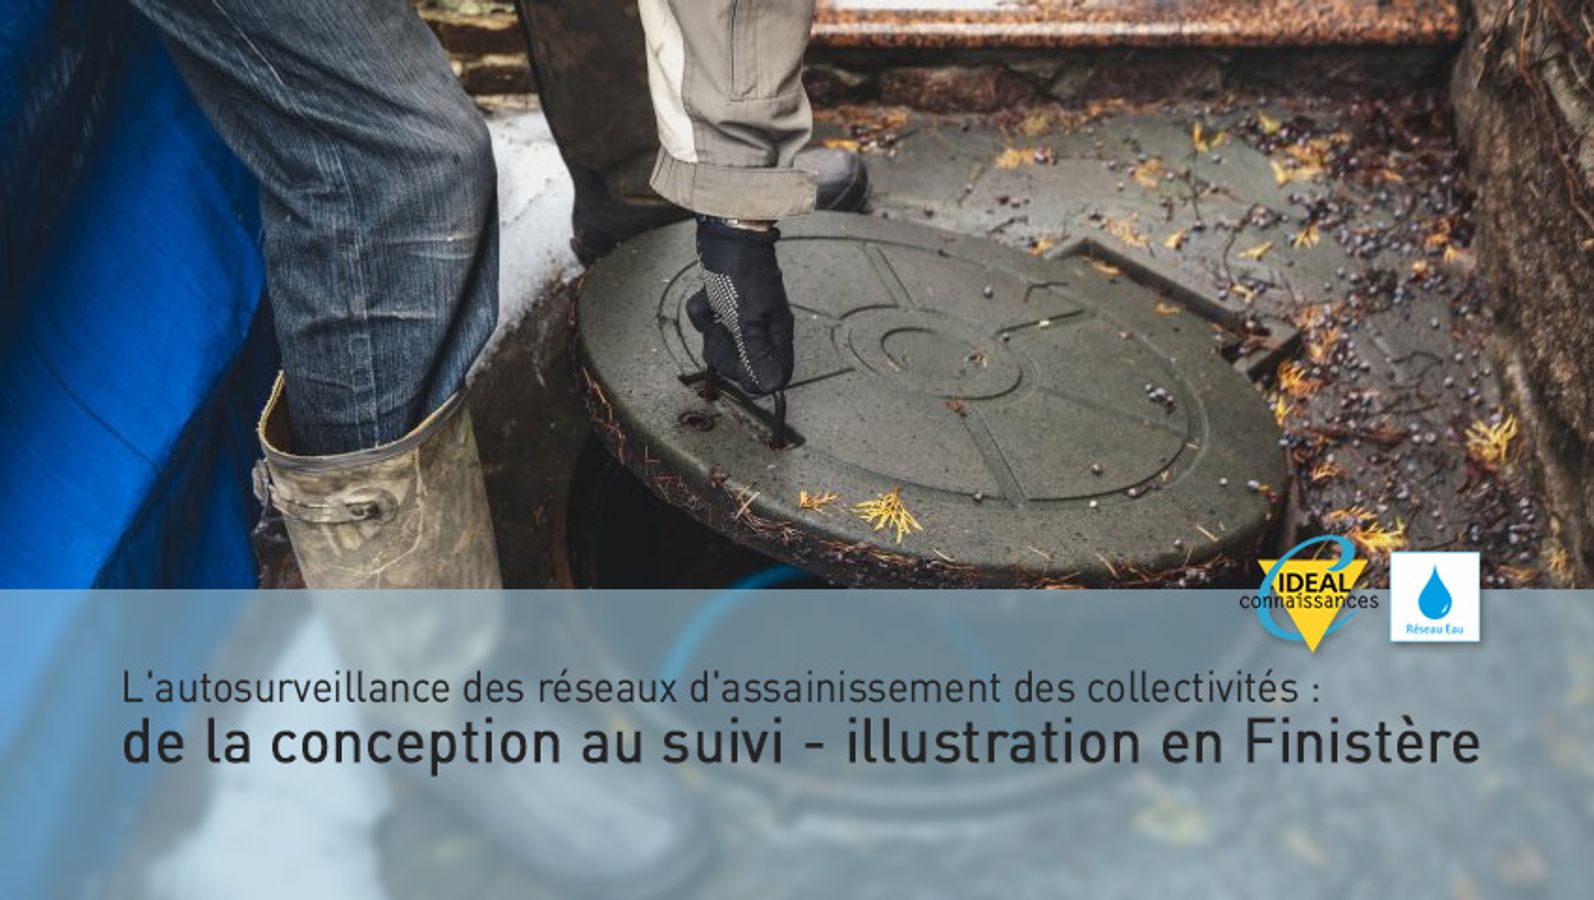 L'autosurveillance des réseaux d'assainissement des collectivités : de la conception au suivi - illustration en Finistère